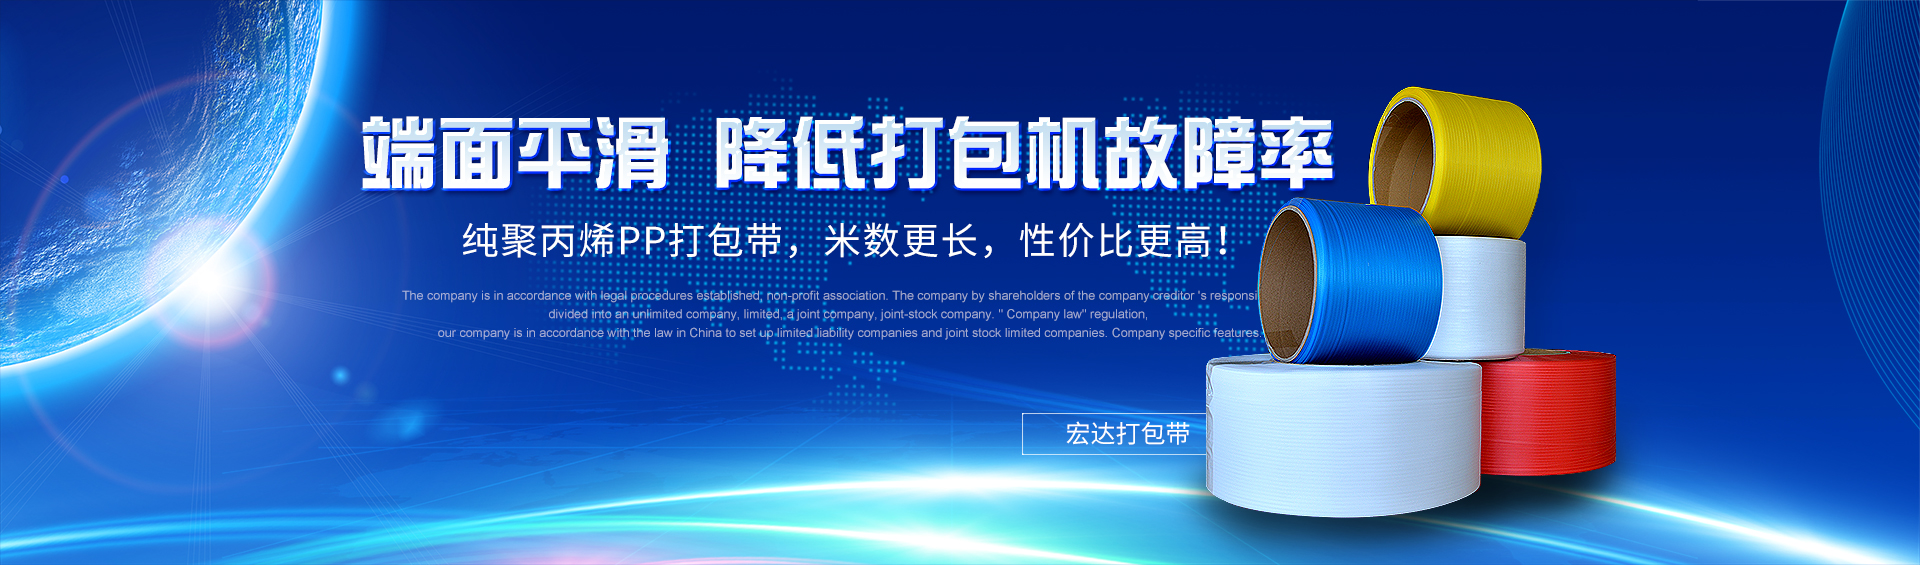 Zhejiang Hongda Packaging Technology Co.,Ltd.